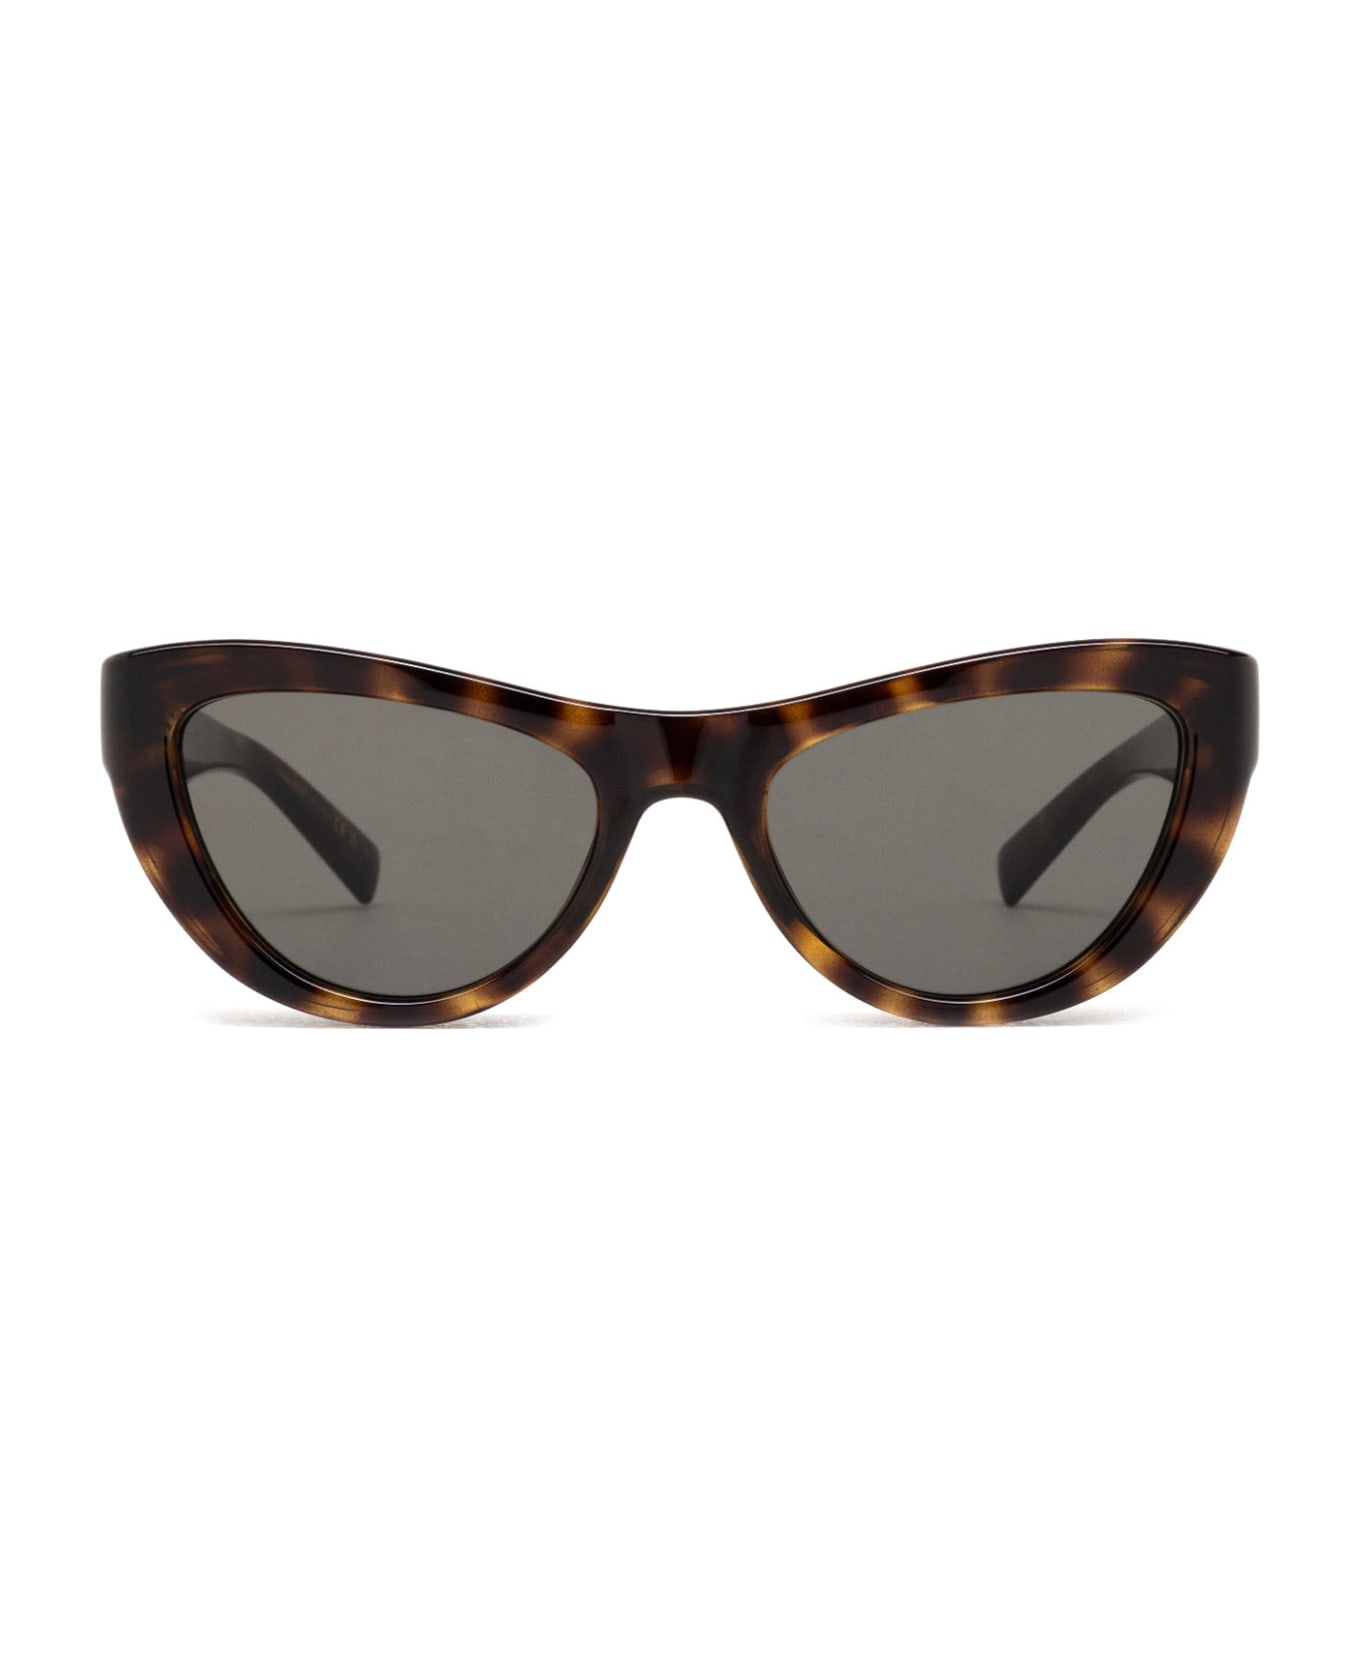 Saint Laurent Eyewear Sl 676 Havana Sunglasses - Havana